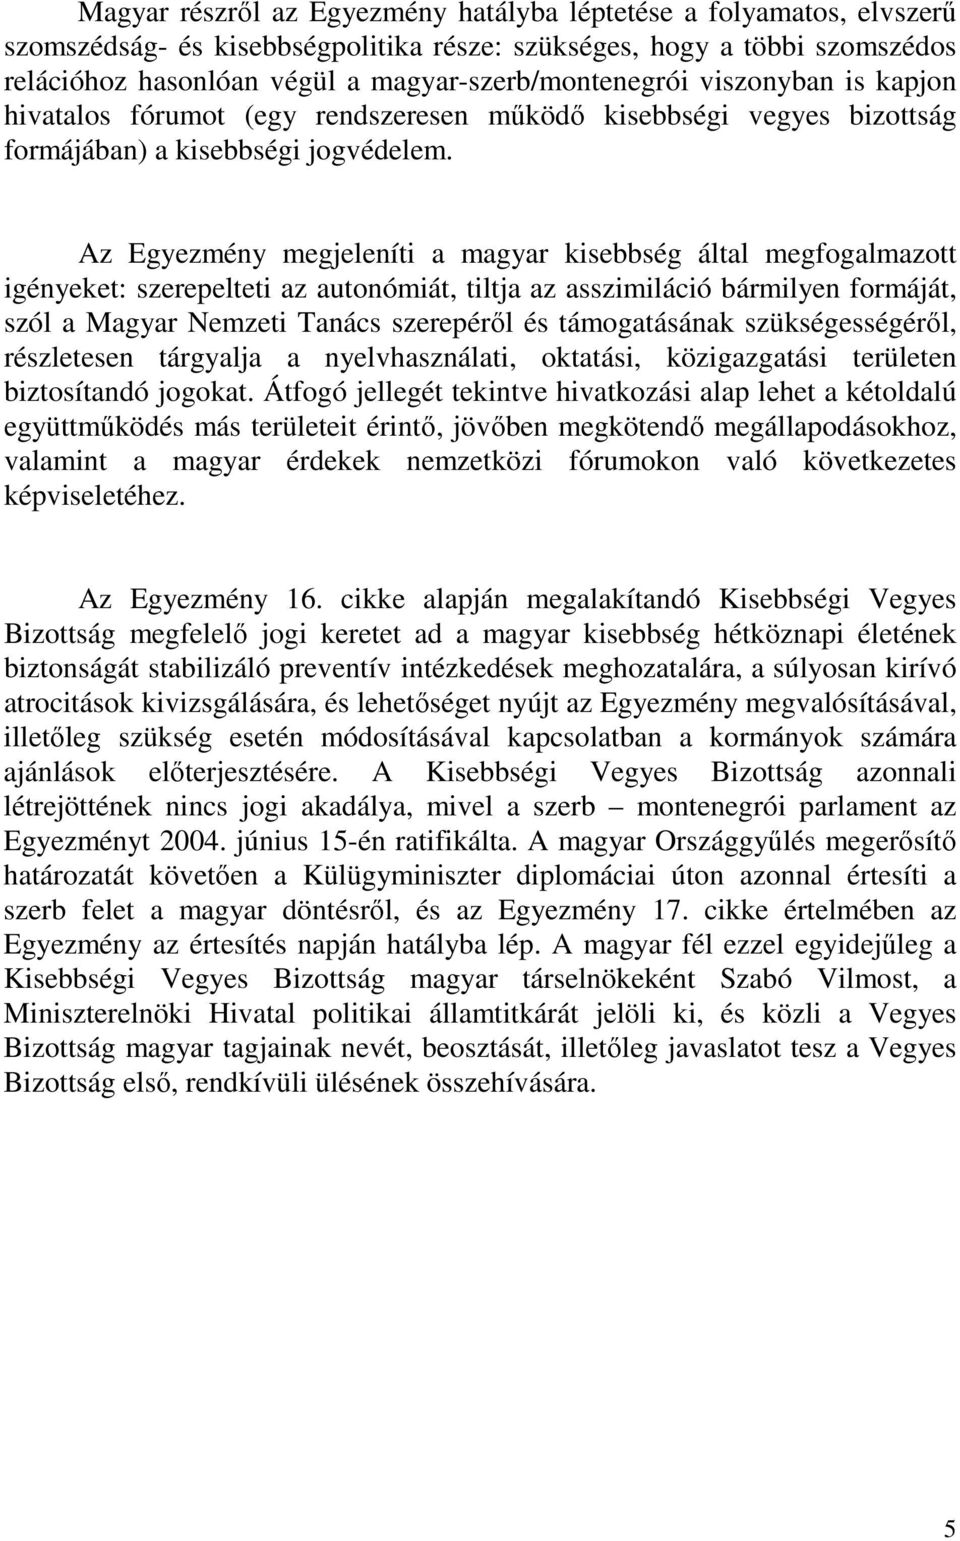 Az Egyezmény megjeleníti a magyar kisebbség által megfogalmazott igényeket: szerepelteti az autonómiát, tiltja az asszimiláció bármilyen formáját, szól a Magyar Nemzeti Tanács szerepérıl és